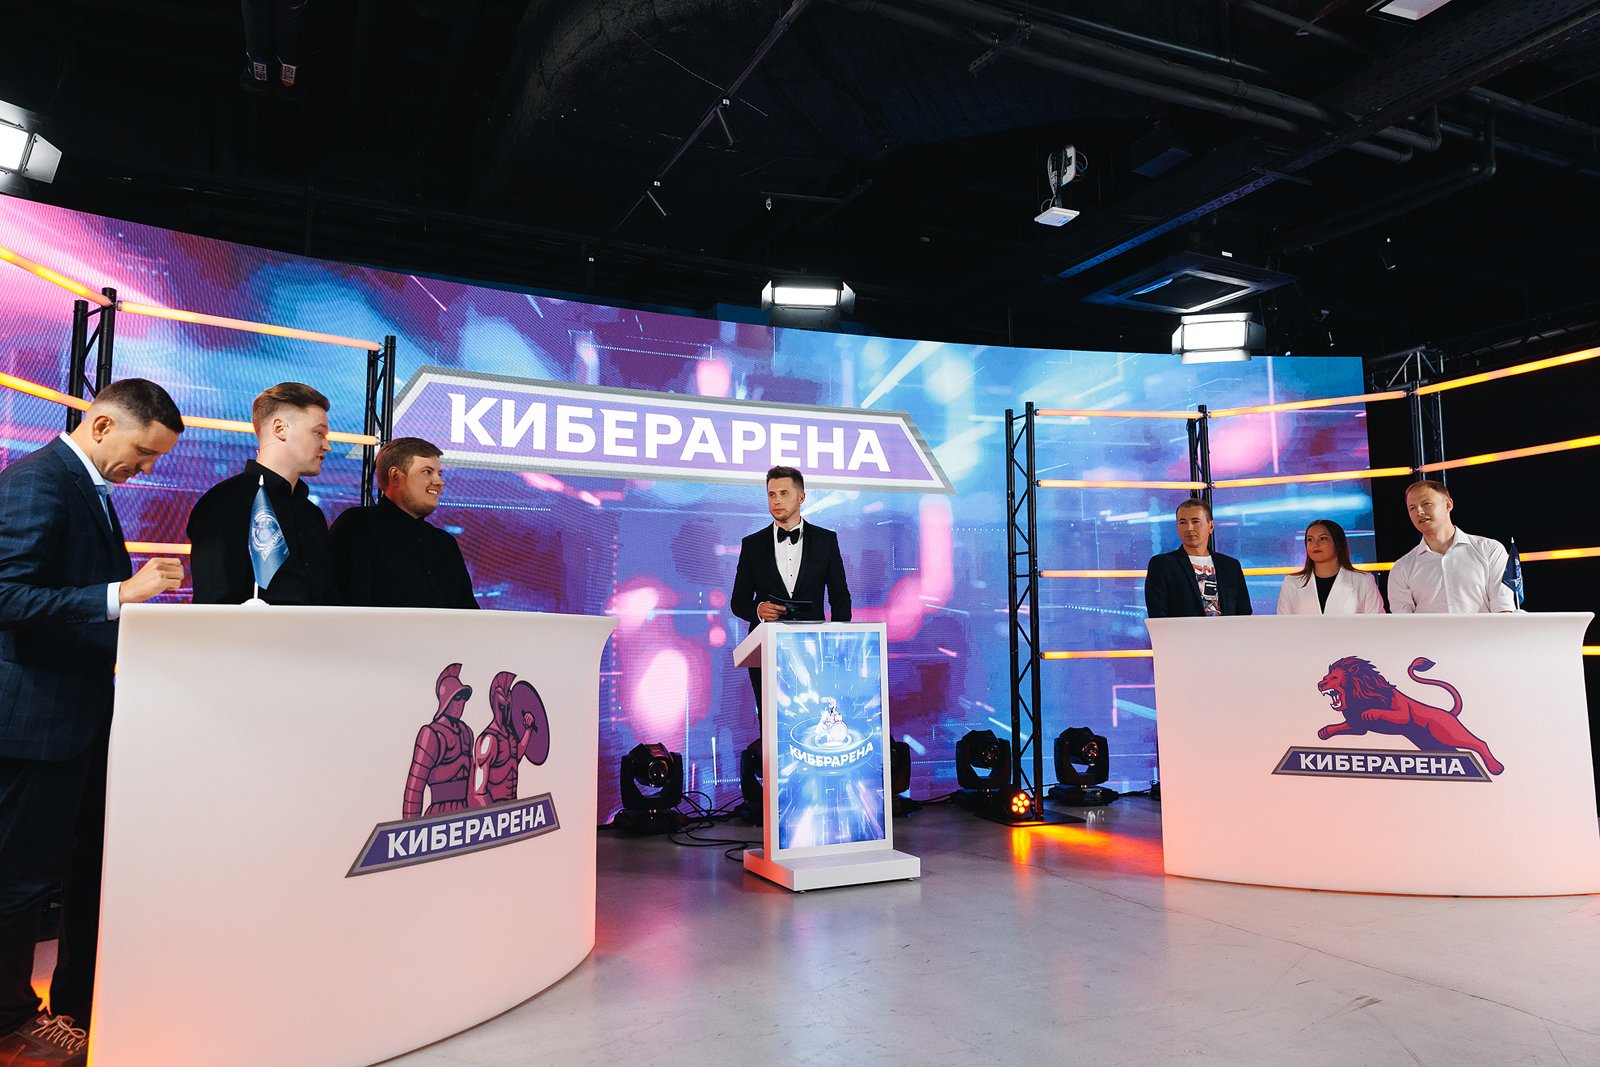 Аудитория второго эфира онлайн-шоу «Киберарена» превысила 6,5 тысяч человек